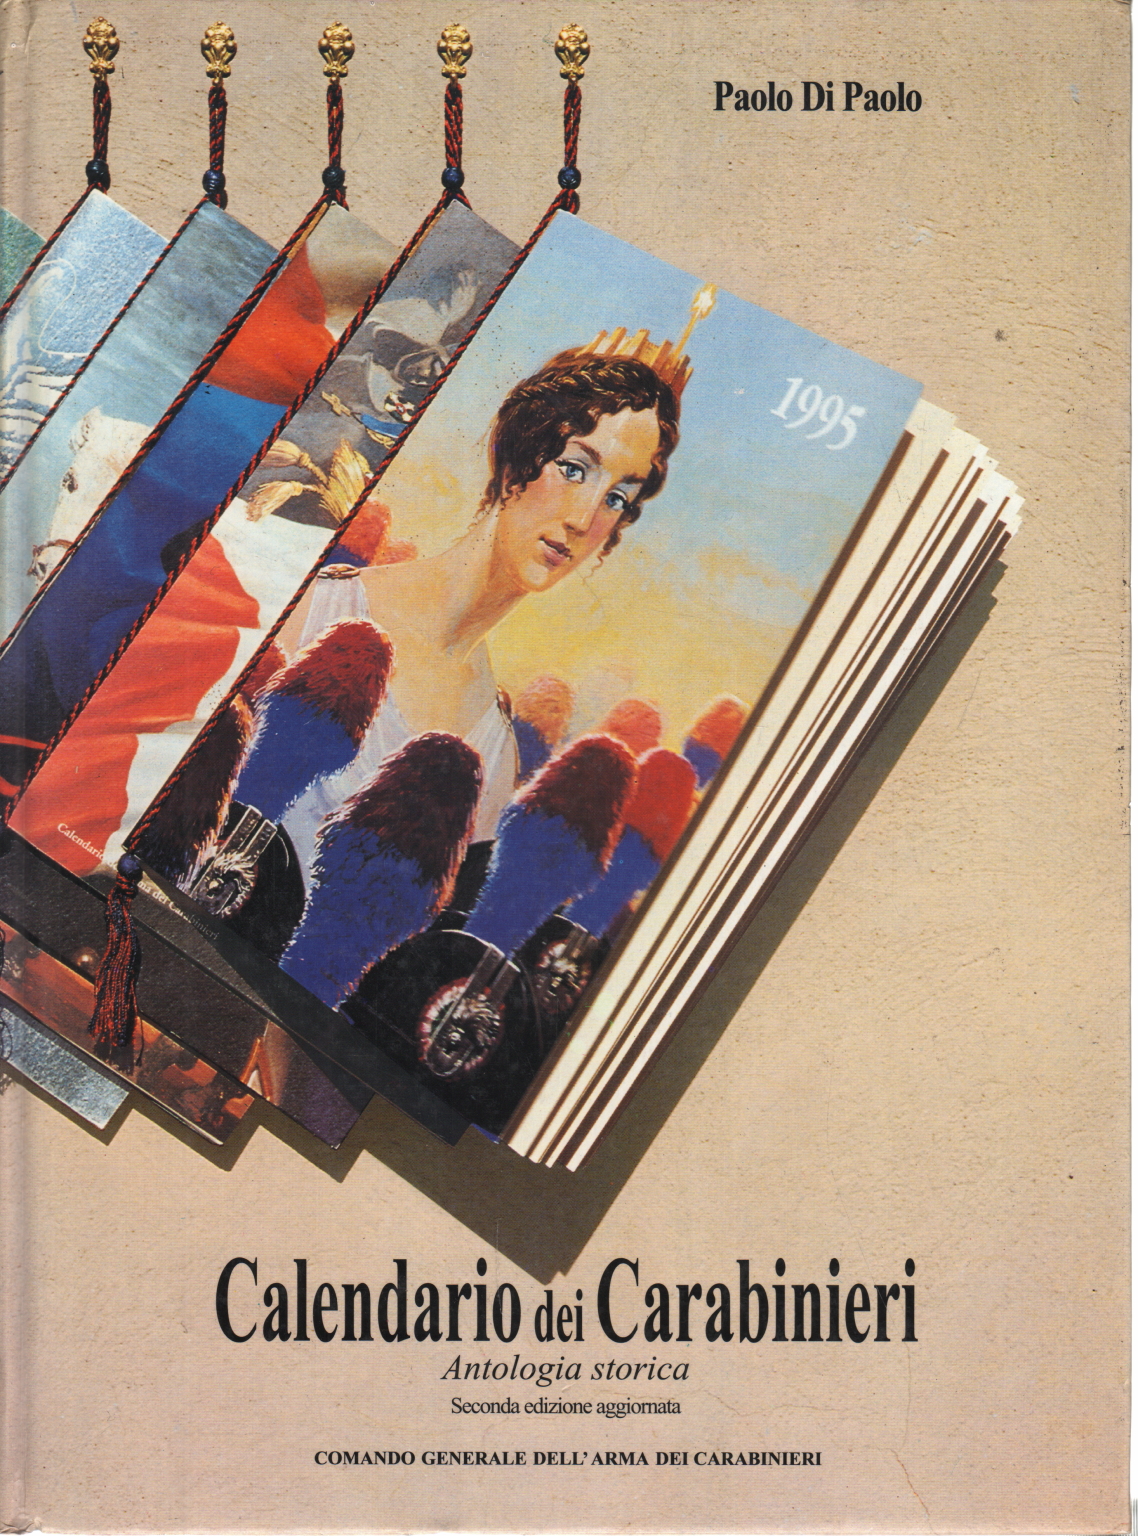 Paolo di Paolo, usato, Calendario dei Carabinieri, Antologia storica,  Libreria, Manualistica